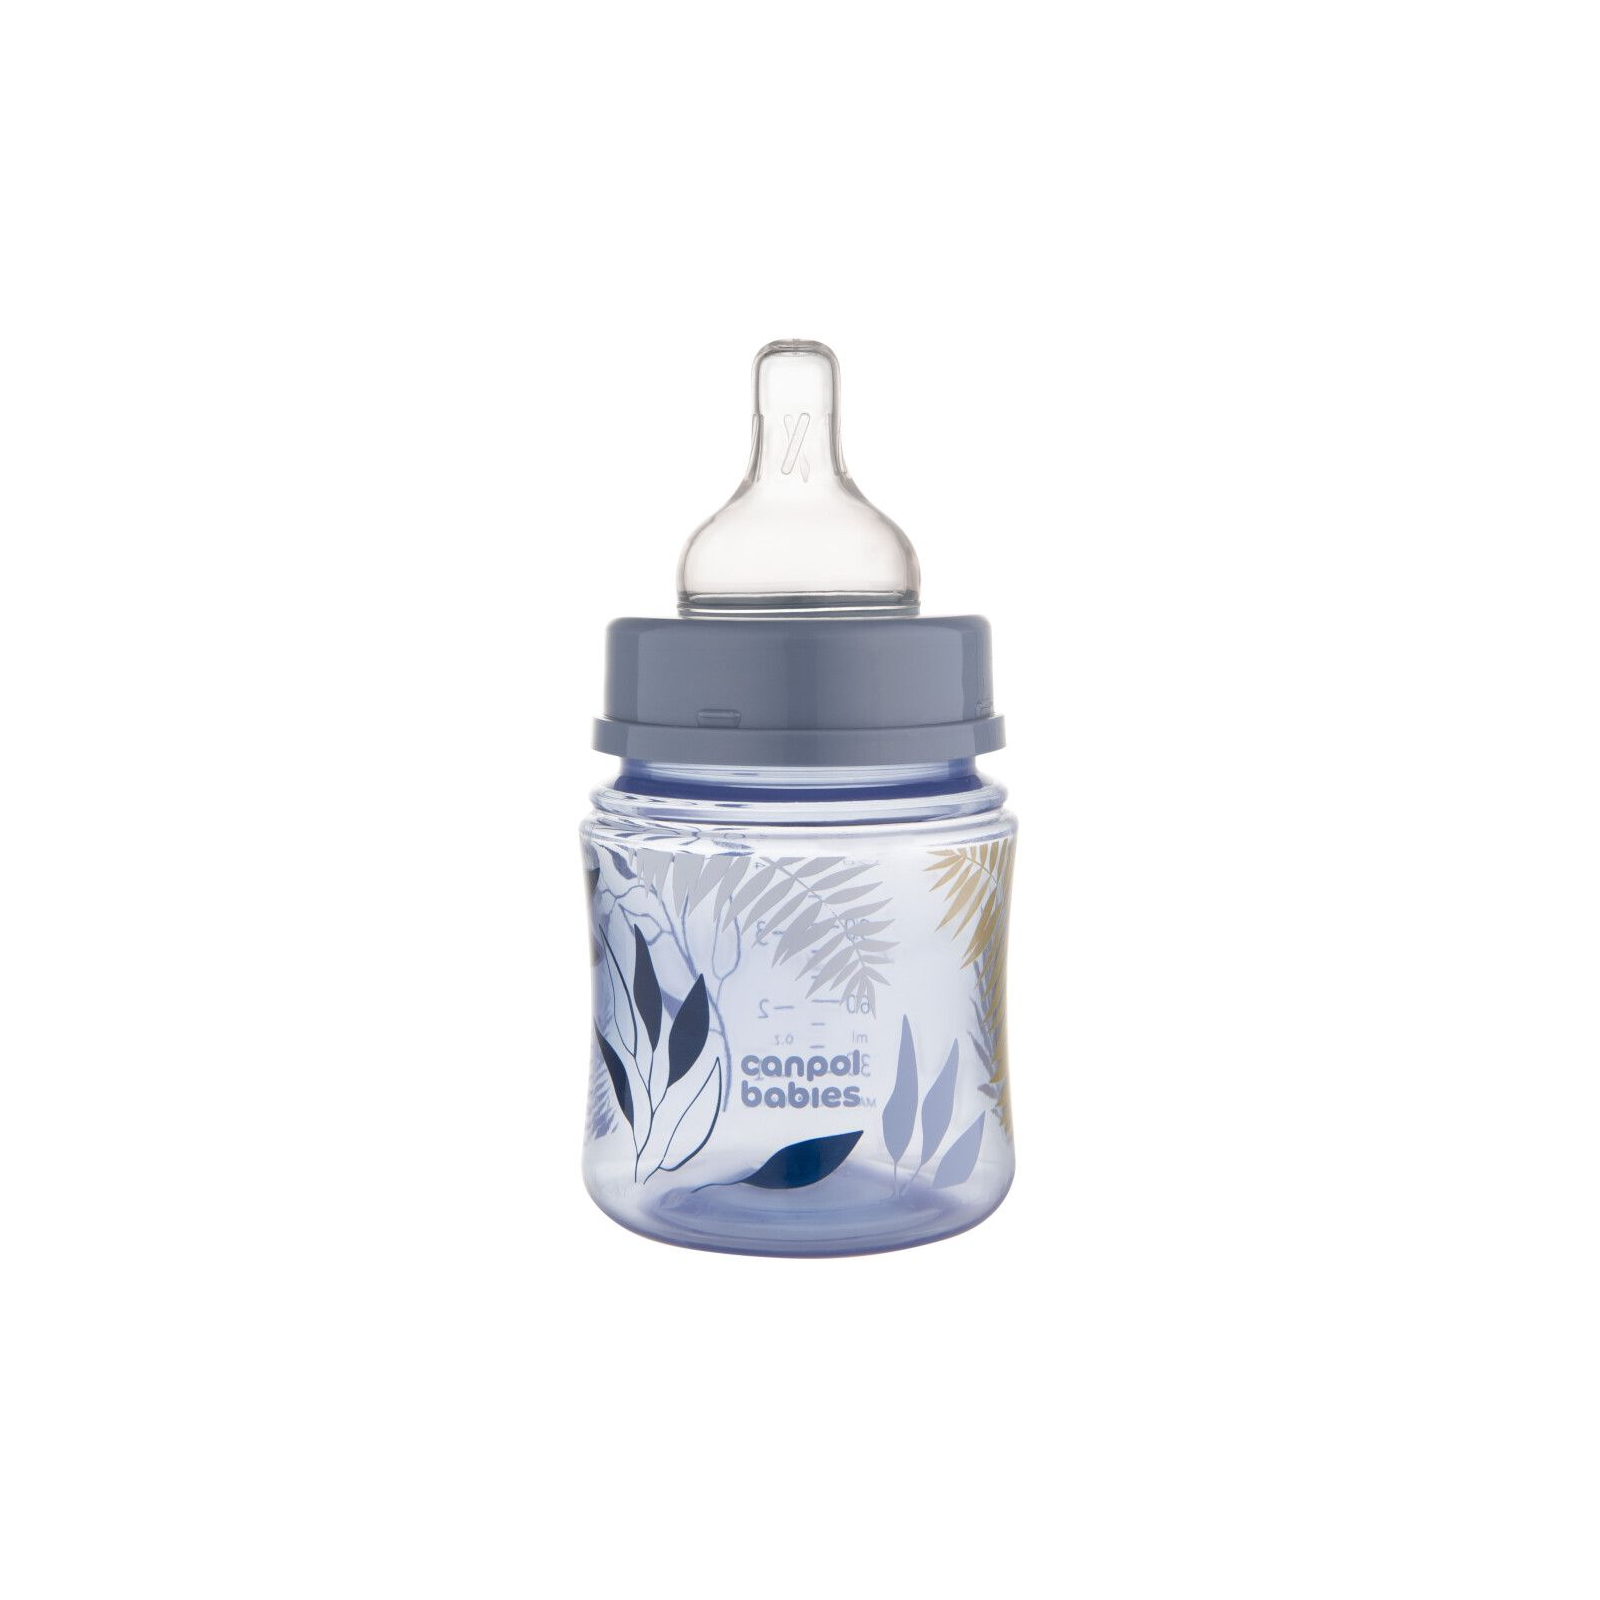 Бутылочка для кормления Canpol babies Easystart GOLD 240 мл антикол. с широк., голубая (35/240_blu) изображение 2